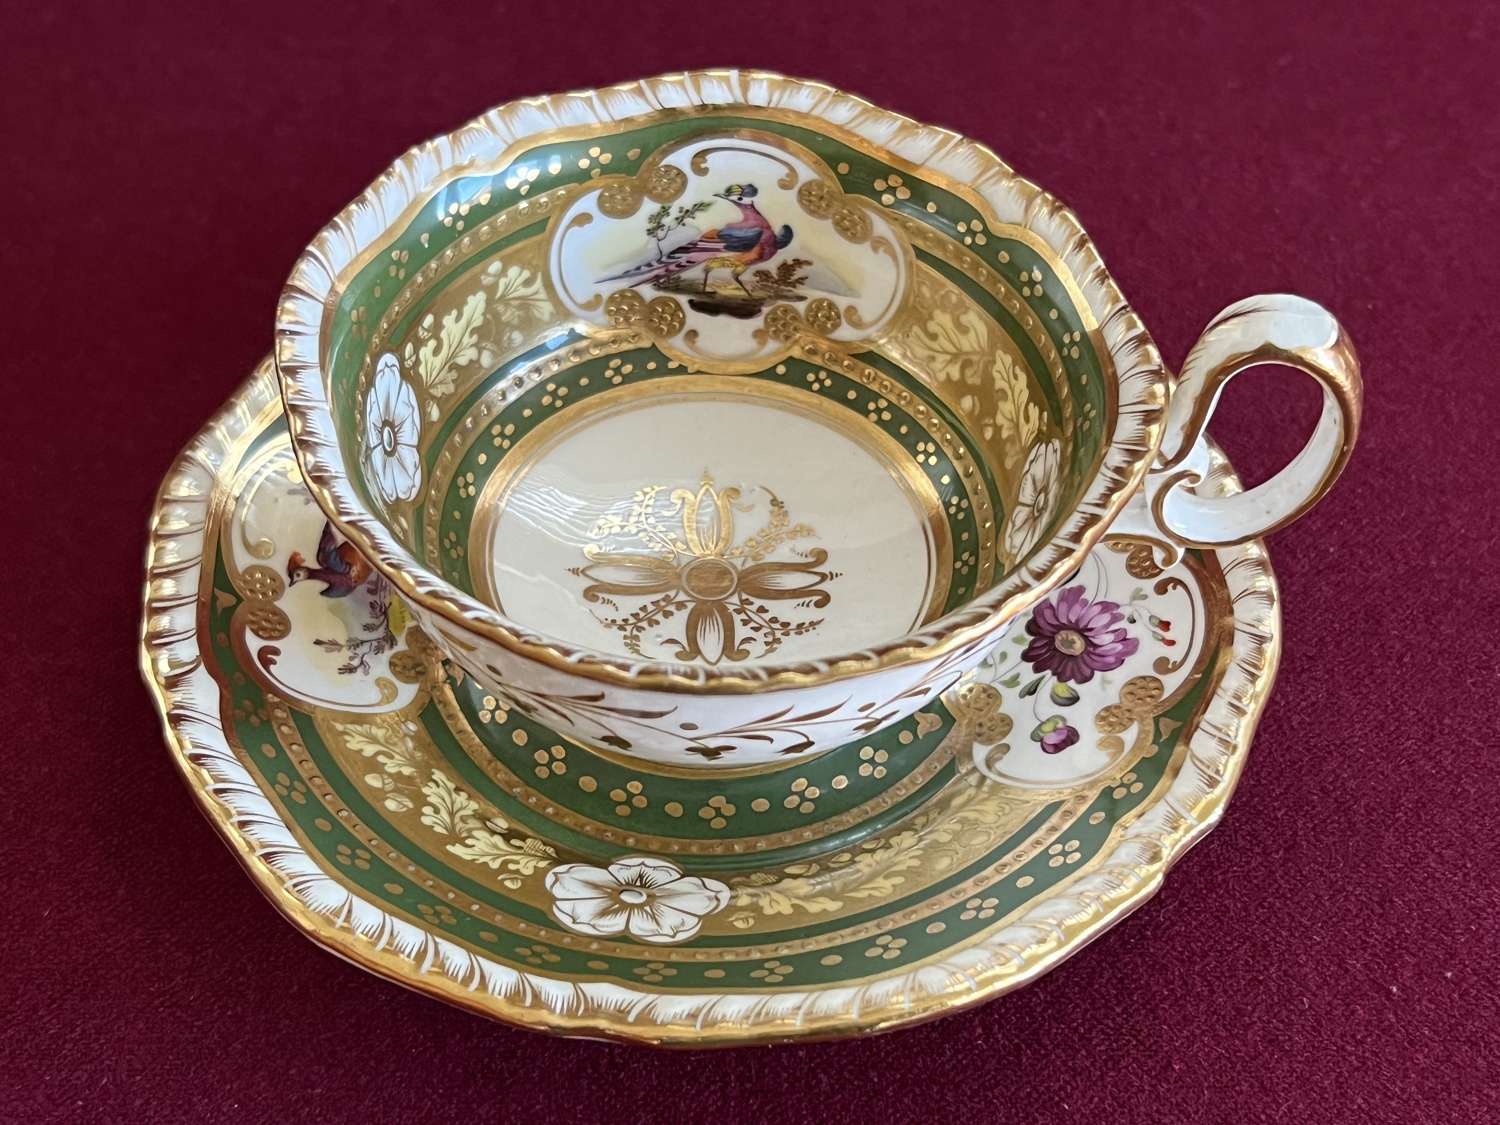 A H & R Daniel Porcelain Tea Cup & Saucer Second Gadroon Pattern 4069